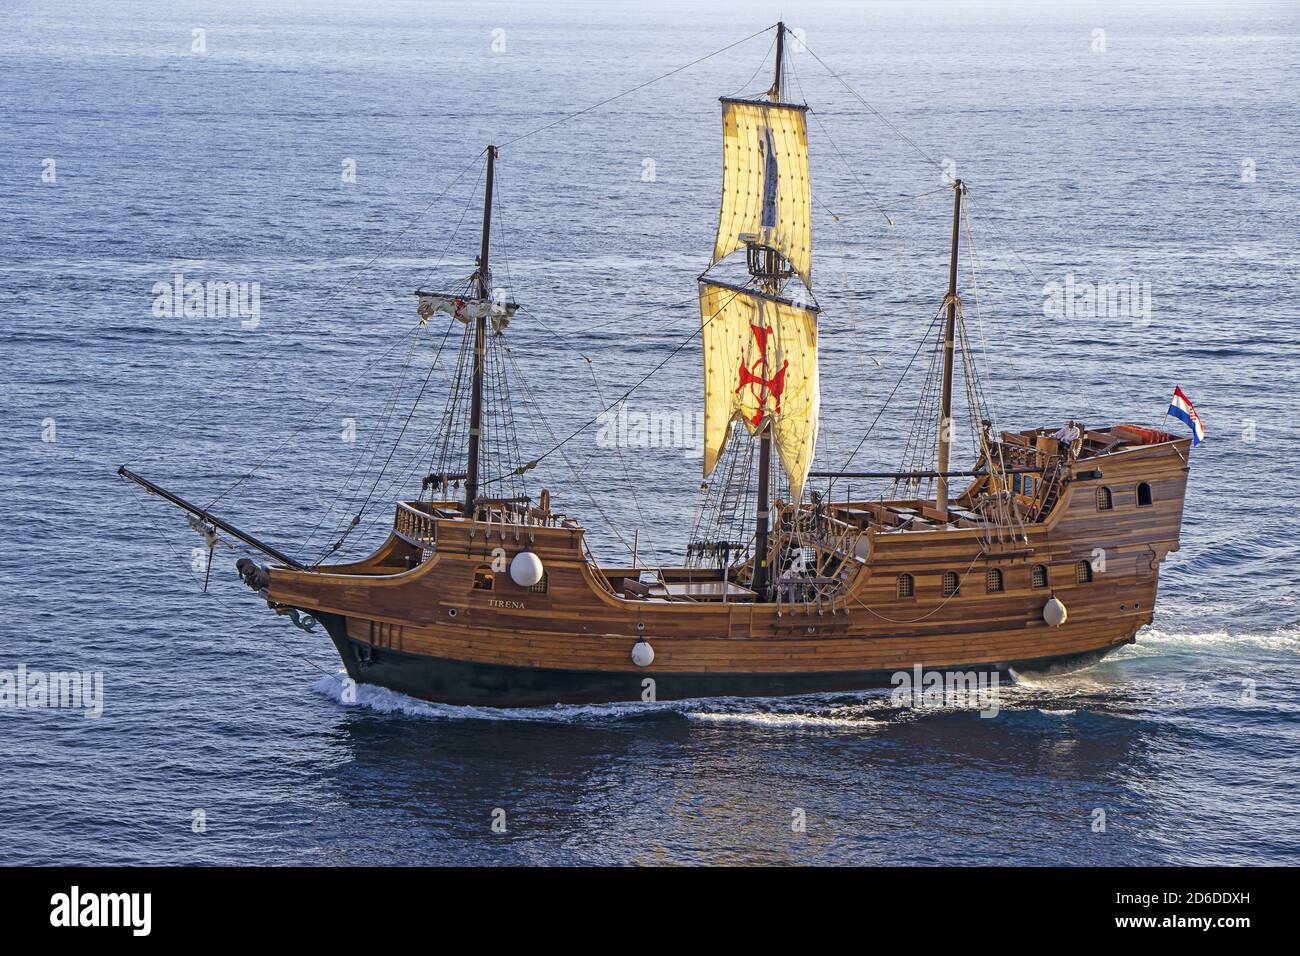 Dubrovnik, Croacia - 02. Septiembre 2020: Tirena, réplica turística de barco medieval de madera, navegando al puerto antiguo en Dubrovnik, Croacia, Europa. Foto de stock